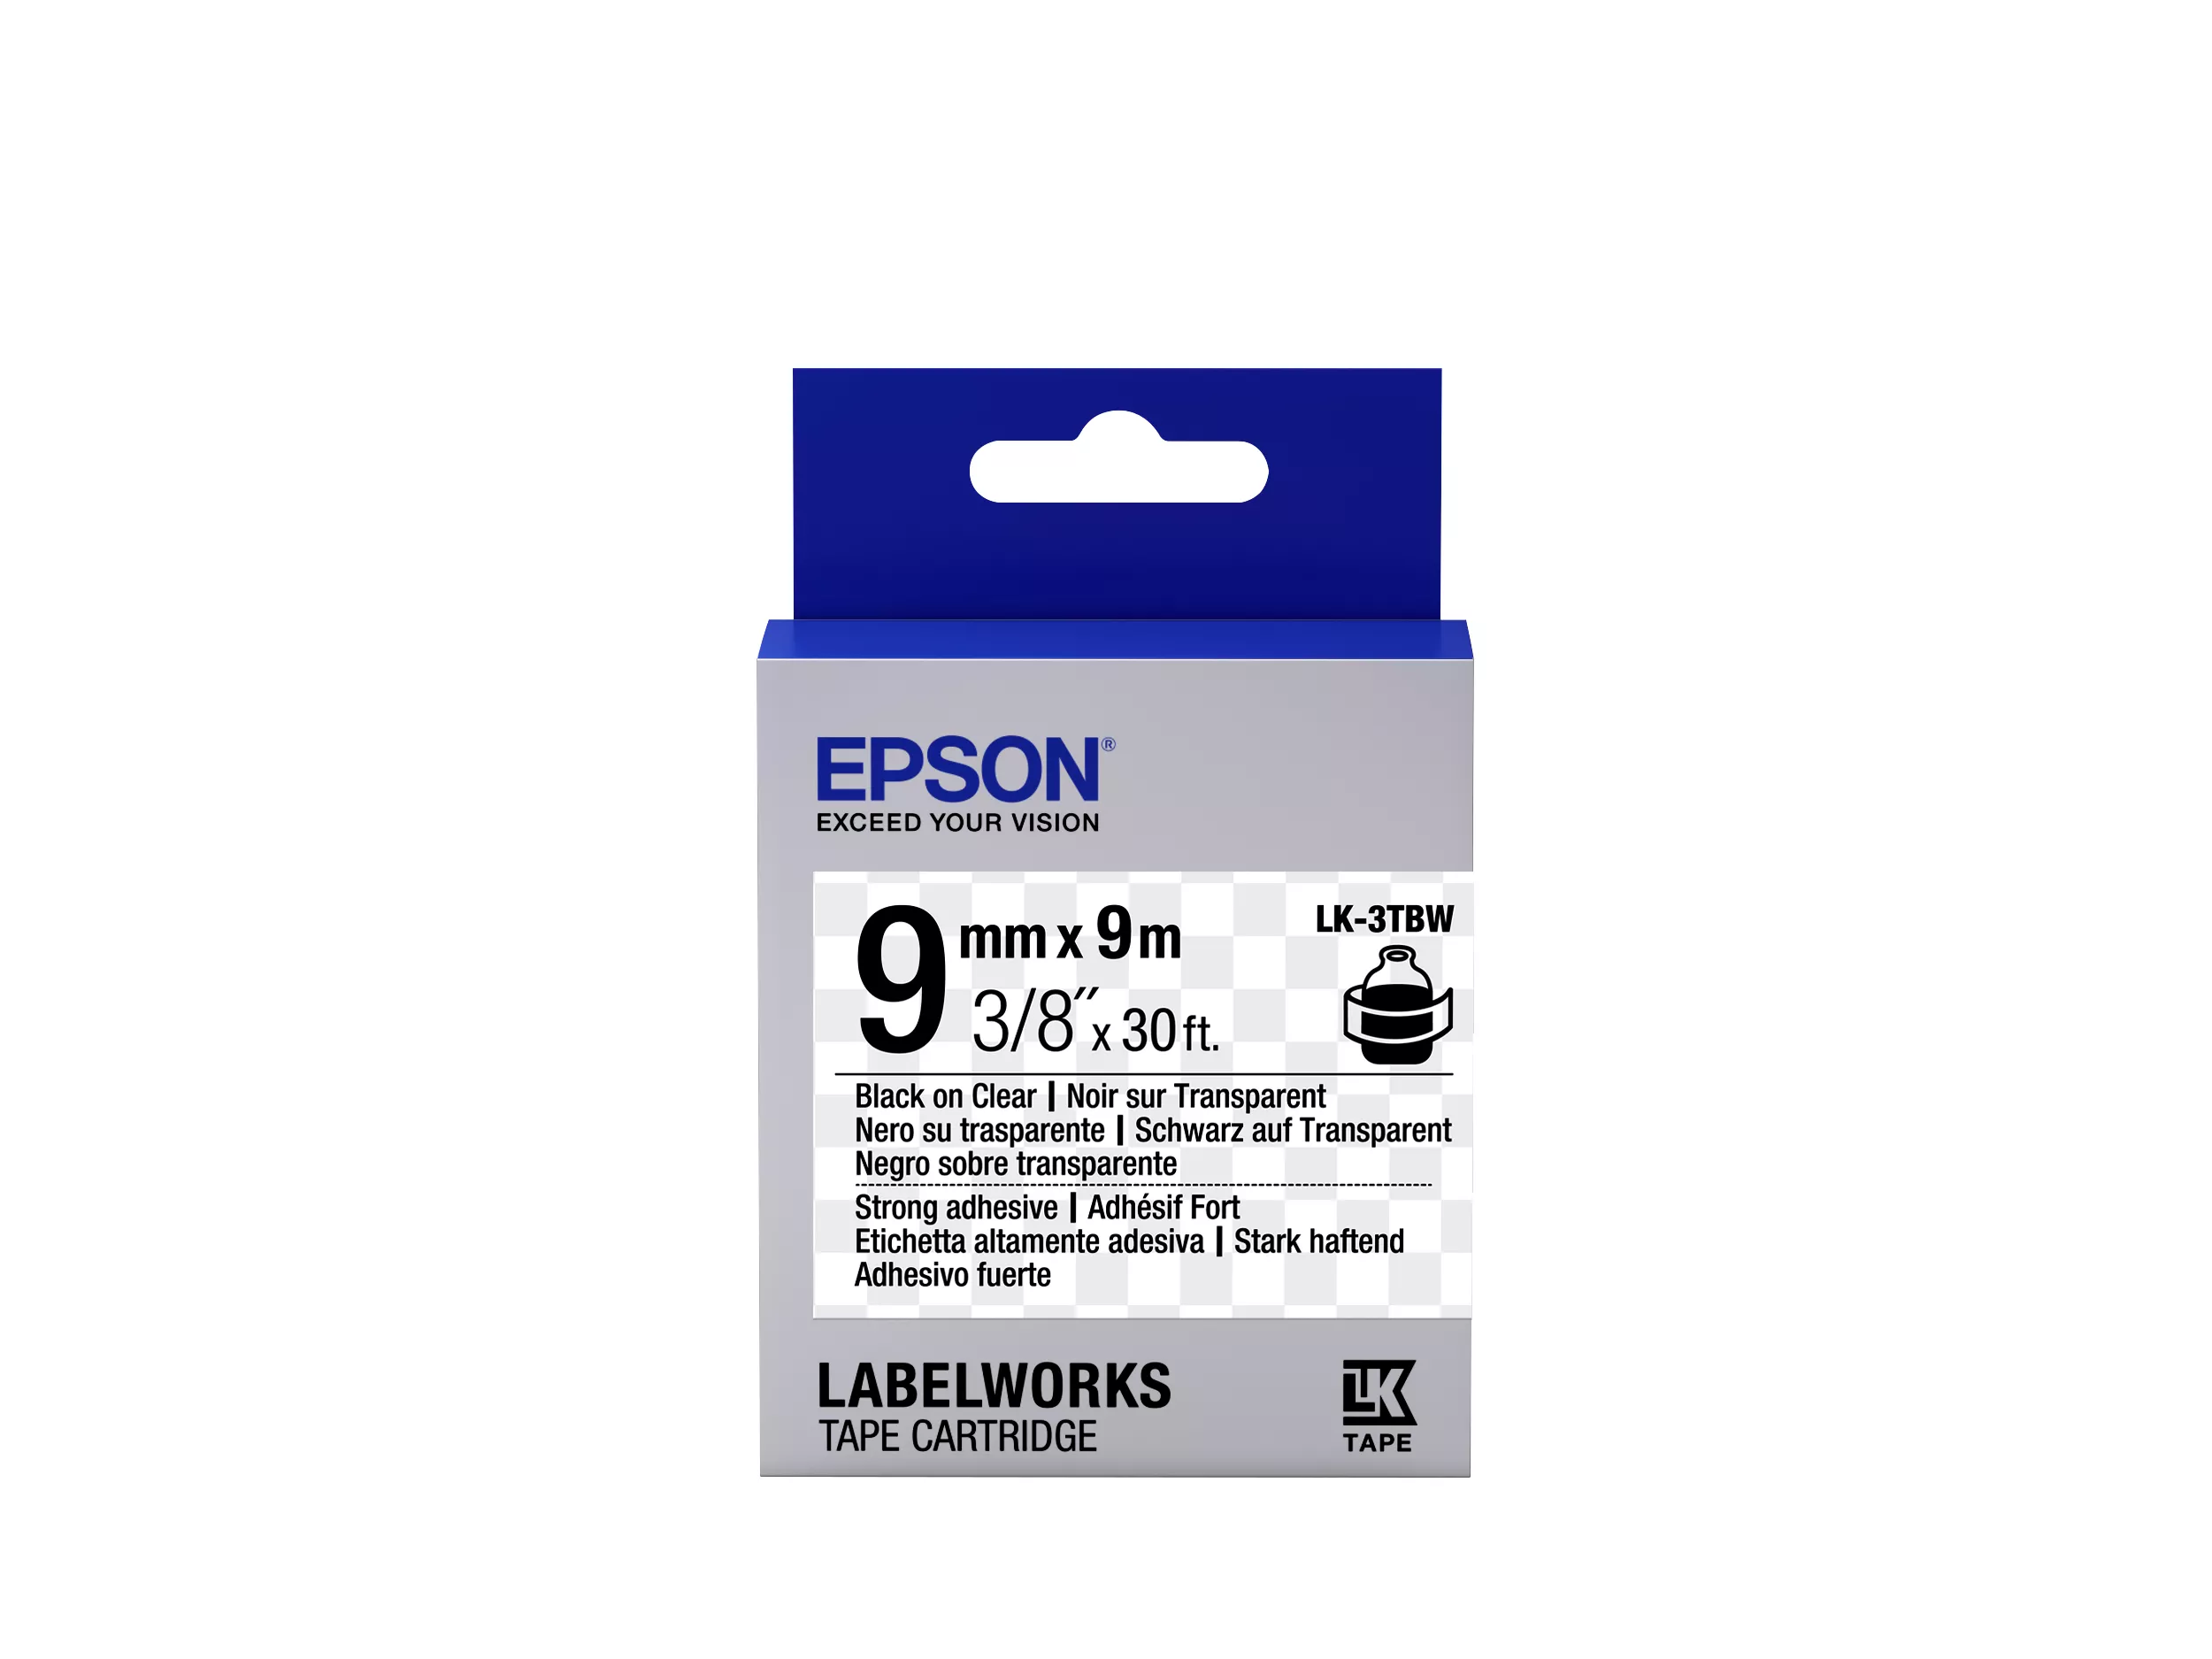 Achat Epson LK-3TBW - Adhésif Fort - Noir sur Transparent et autres produits de la marque Epson